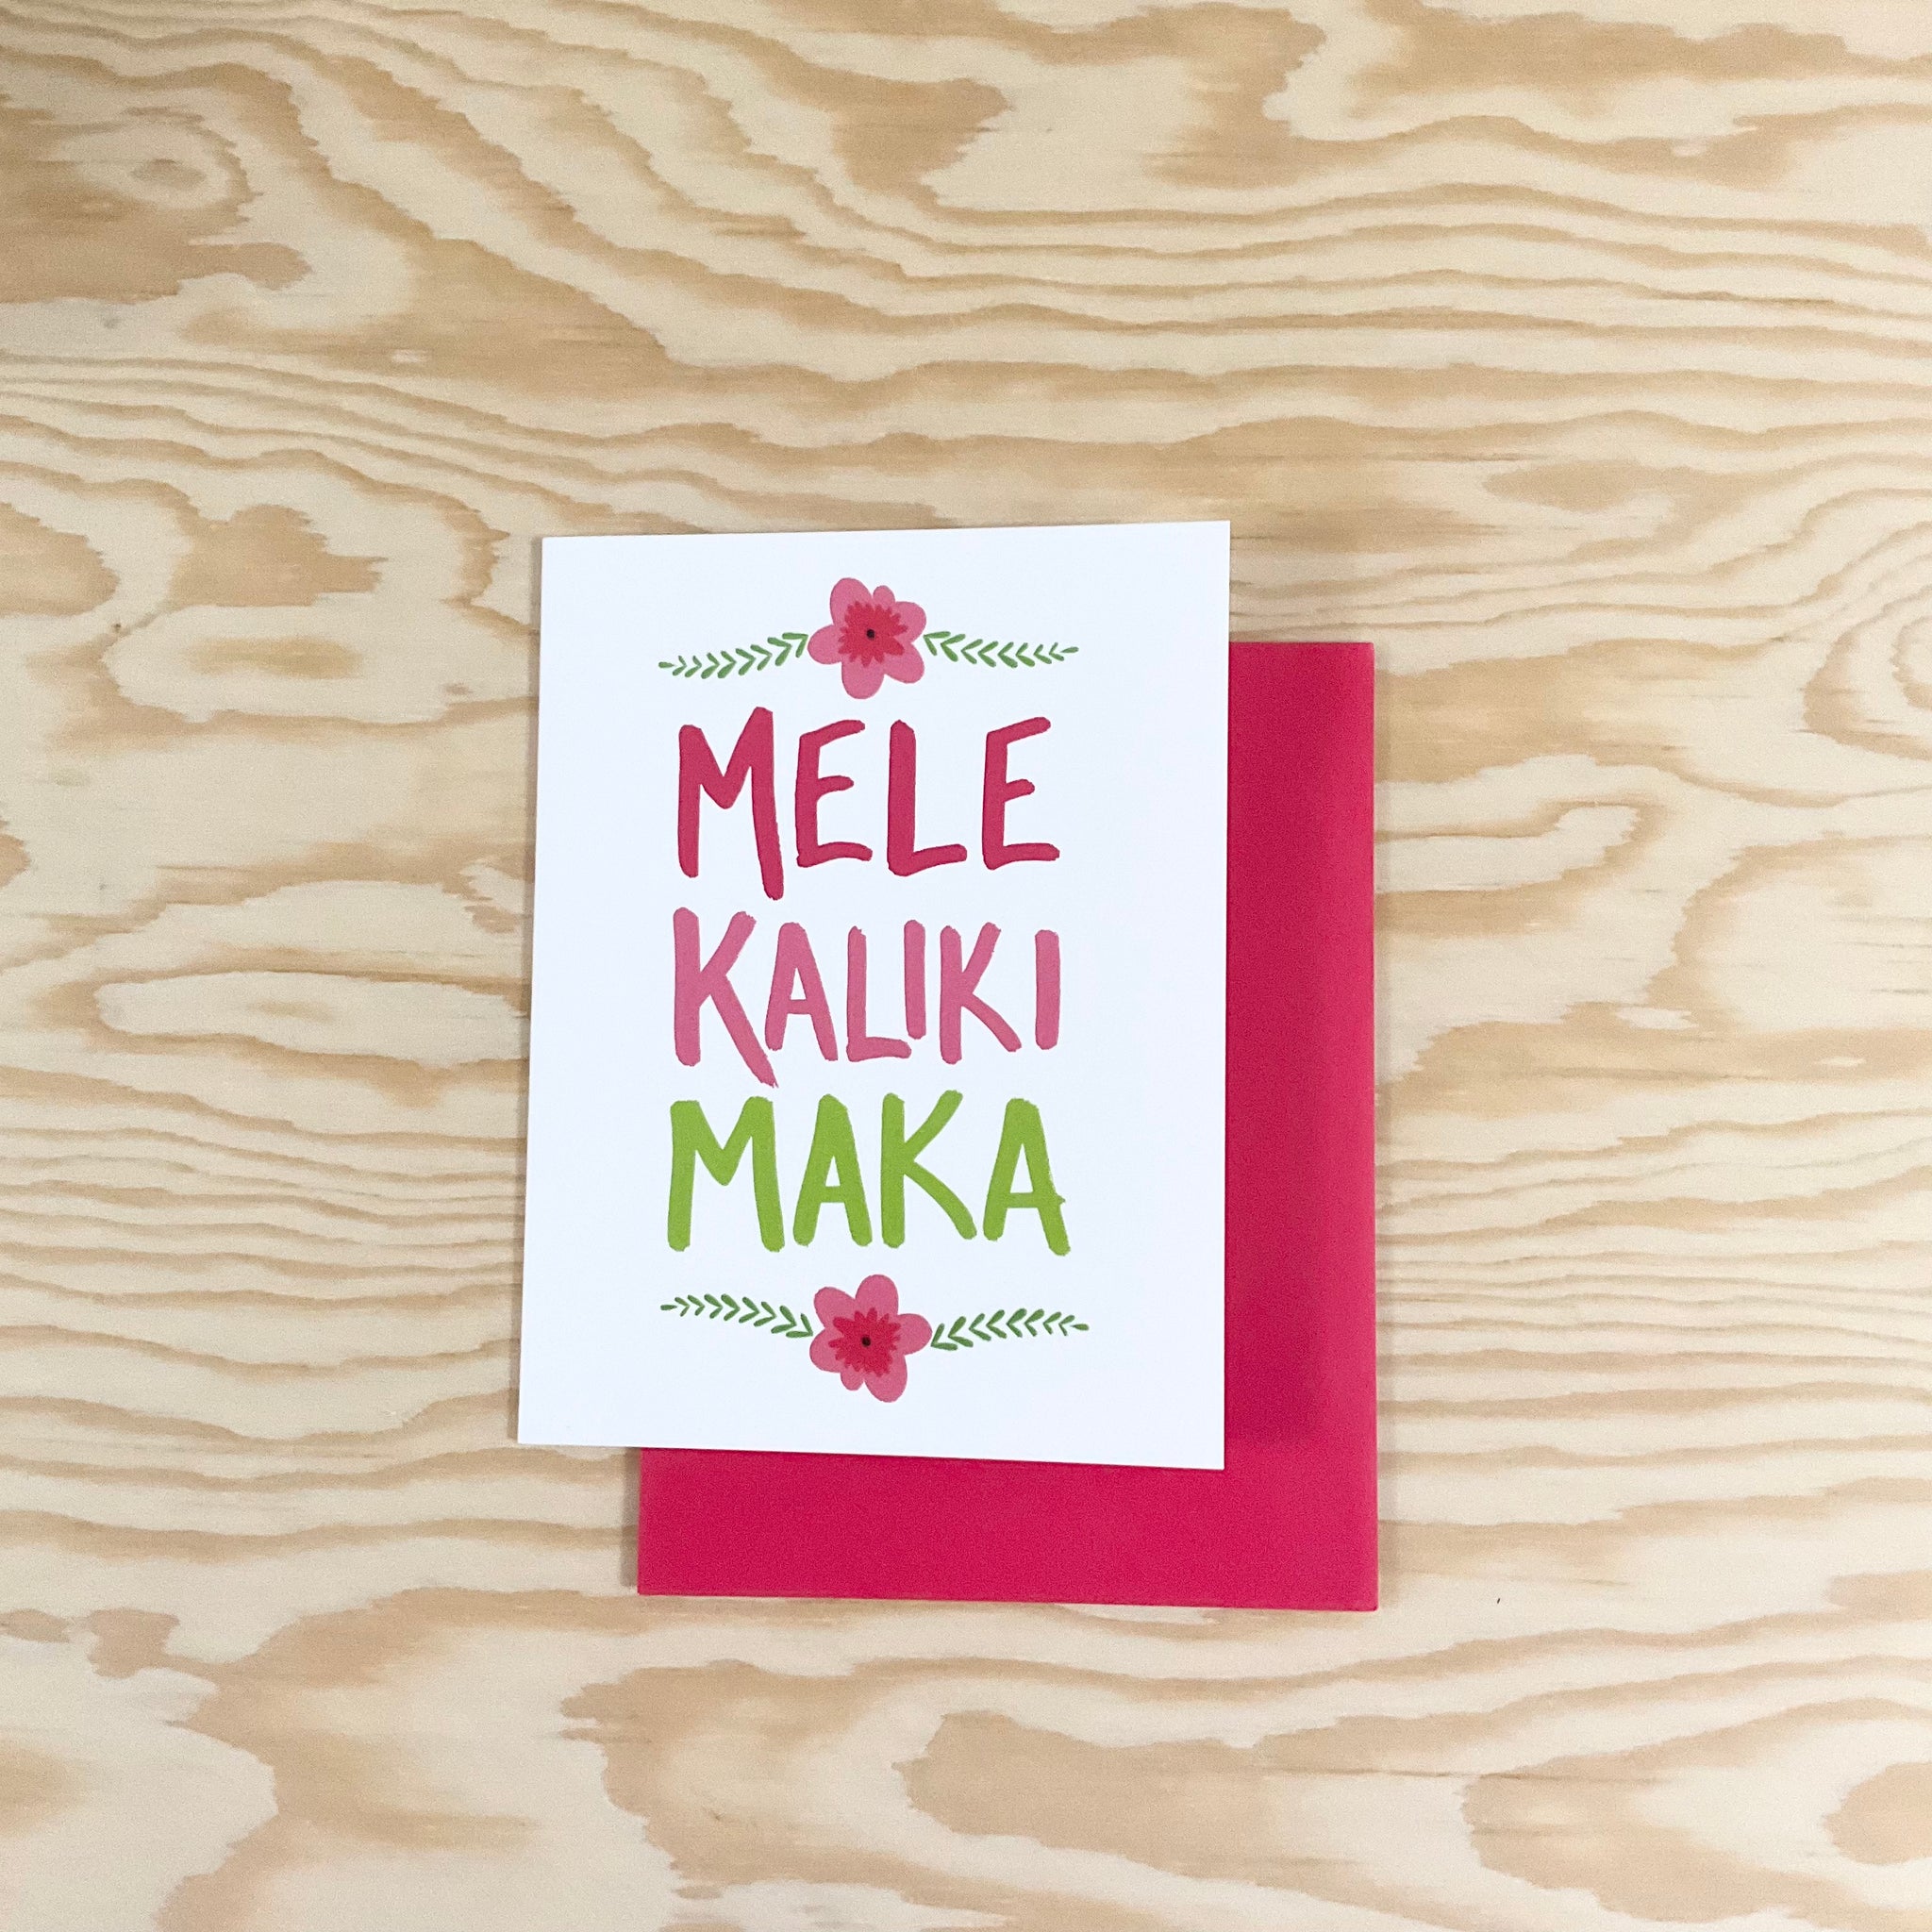 Mele Kalikimaka Holiday Card